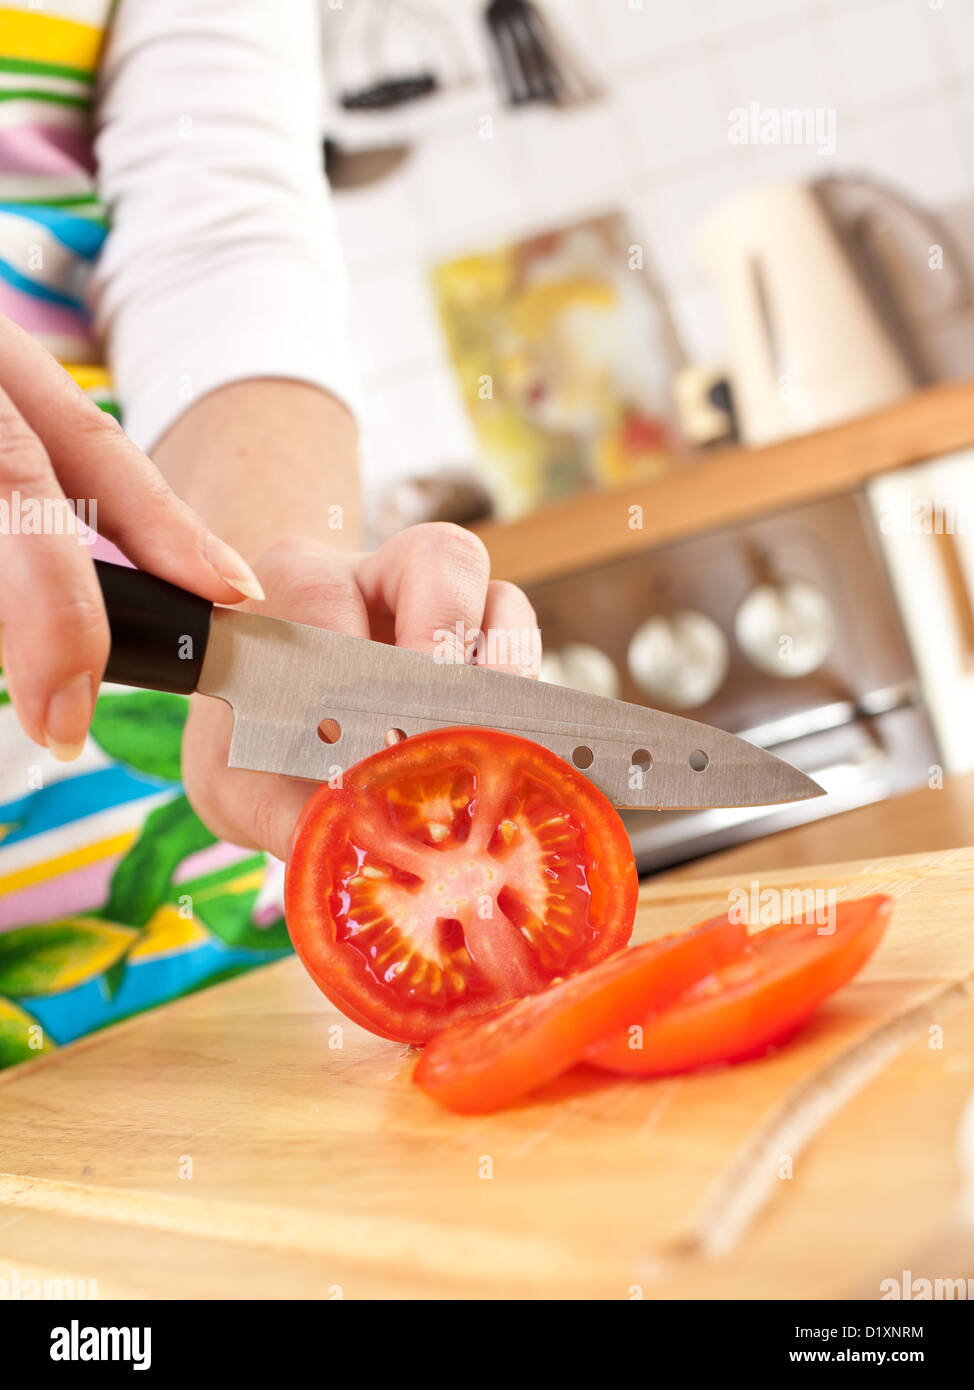 Donna con le mani in mano il taglio di pomodoro, un coltello affilato. Foto Stock